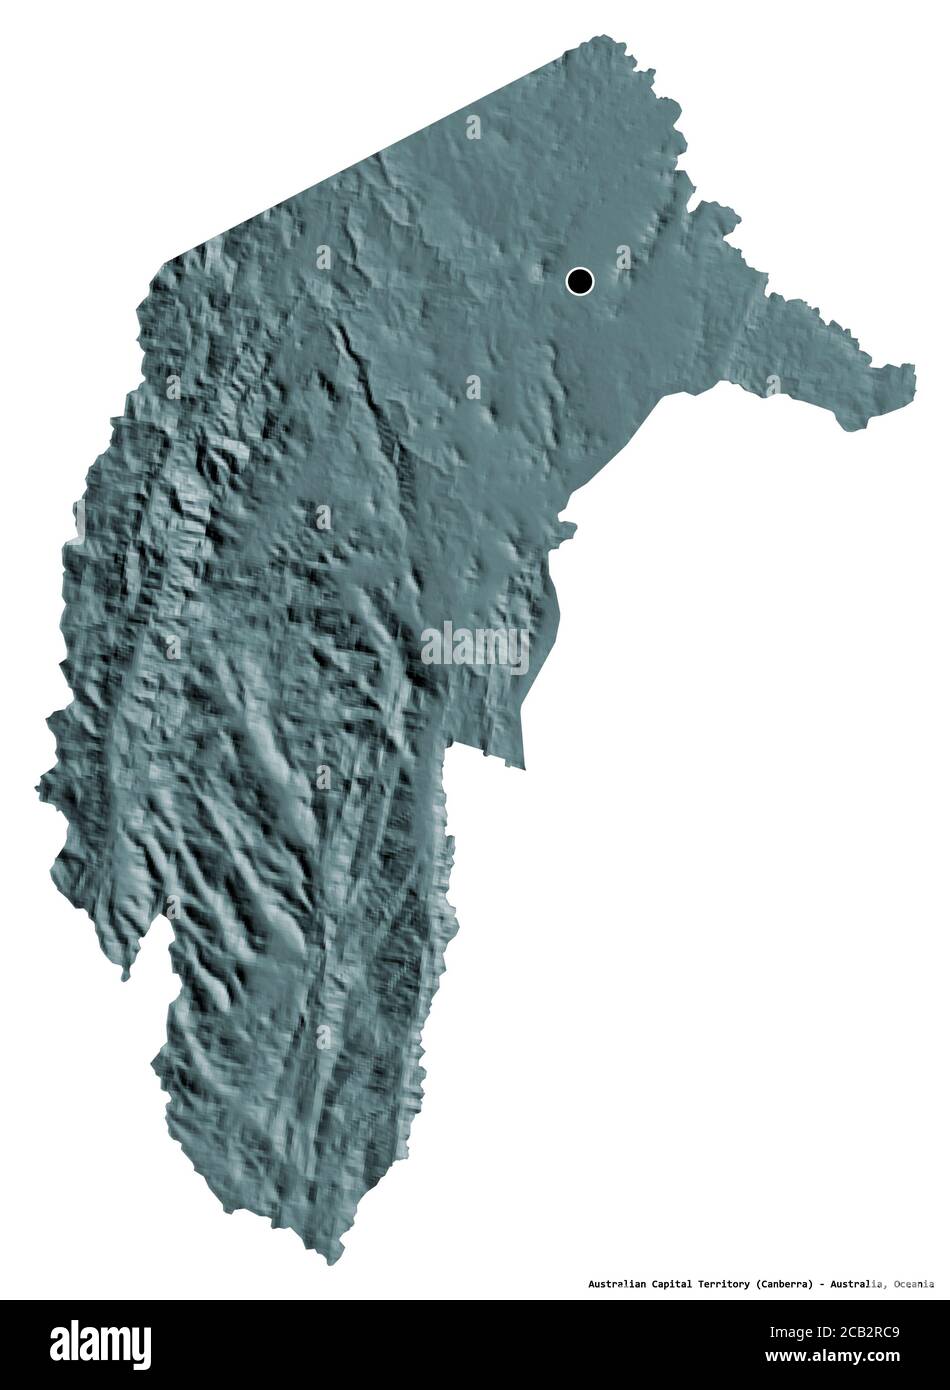 Forme du territoire de la capitale australienne, territoire de l'Australie, avec sa capitale isolée sur fond blanc. Carte d'altitude en couleur. Rendu 3D Banque D'Images